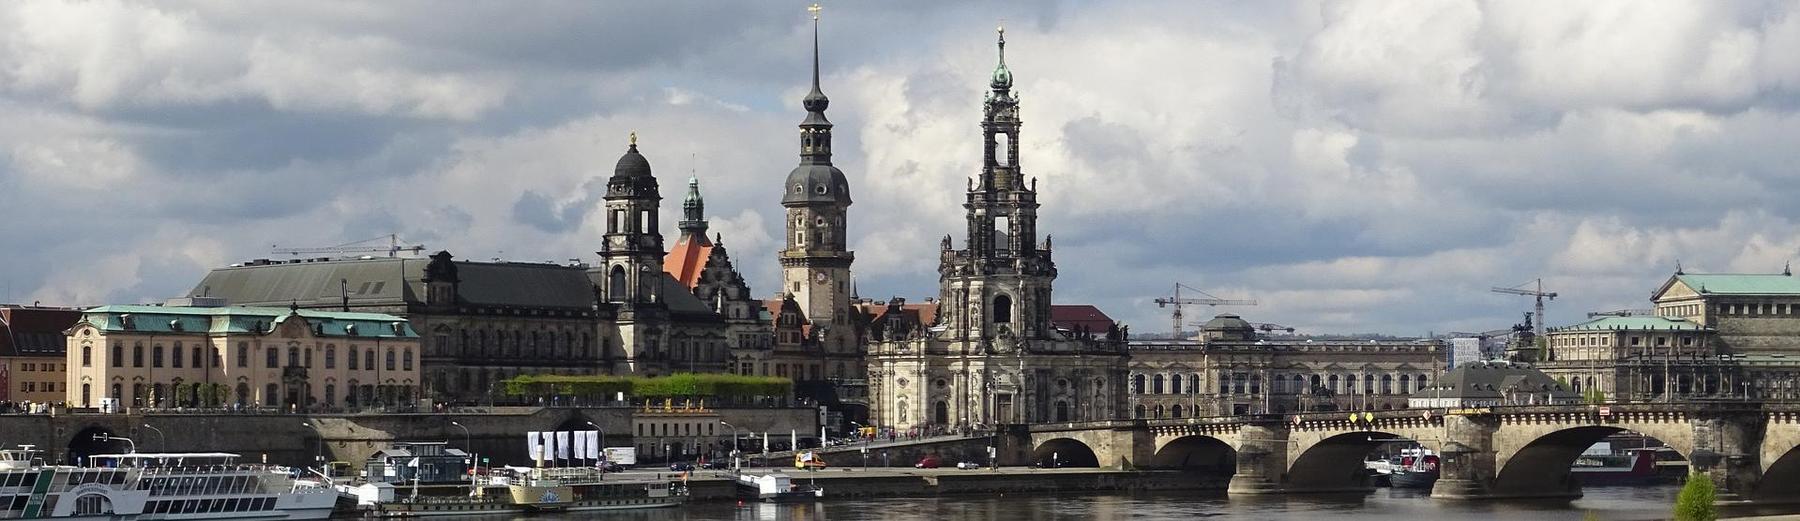 Kontakt Dresden - S·K· Steuerberater, Wirtschaftsprüfer, Rechtsanwälte Steuerberatung, Wirtschaftsprüfung, Betriebswirtschaftliche Beratung